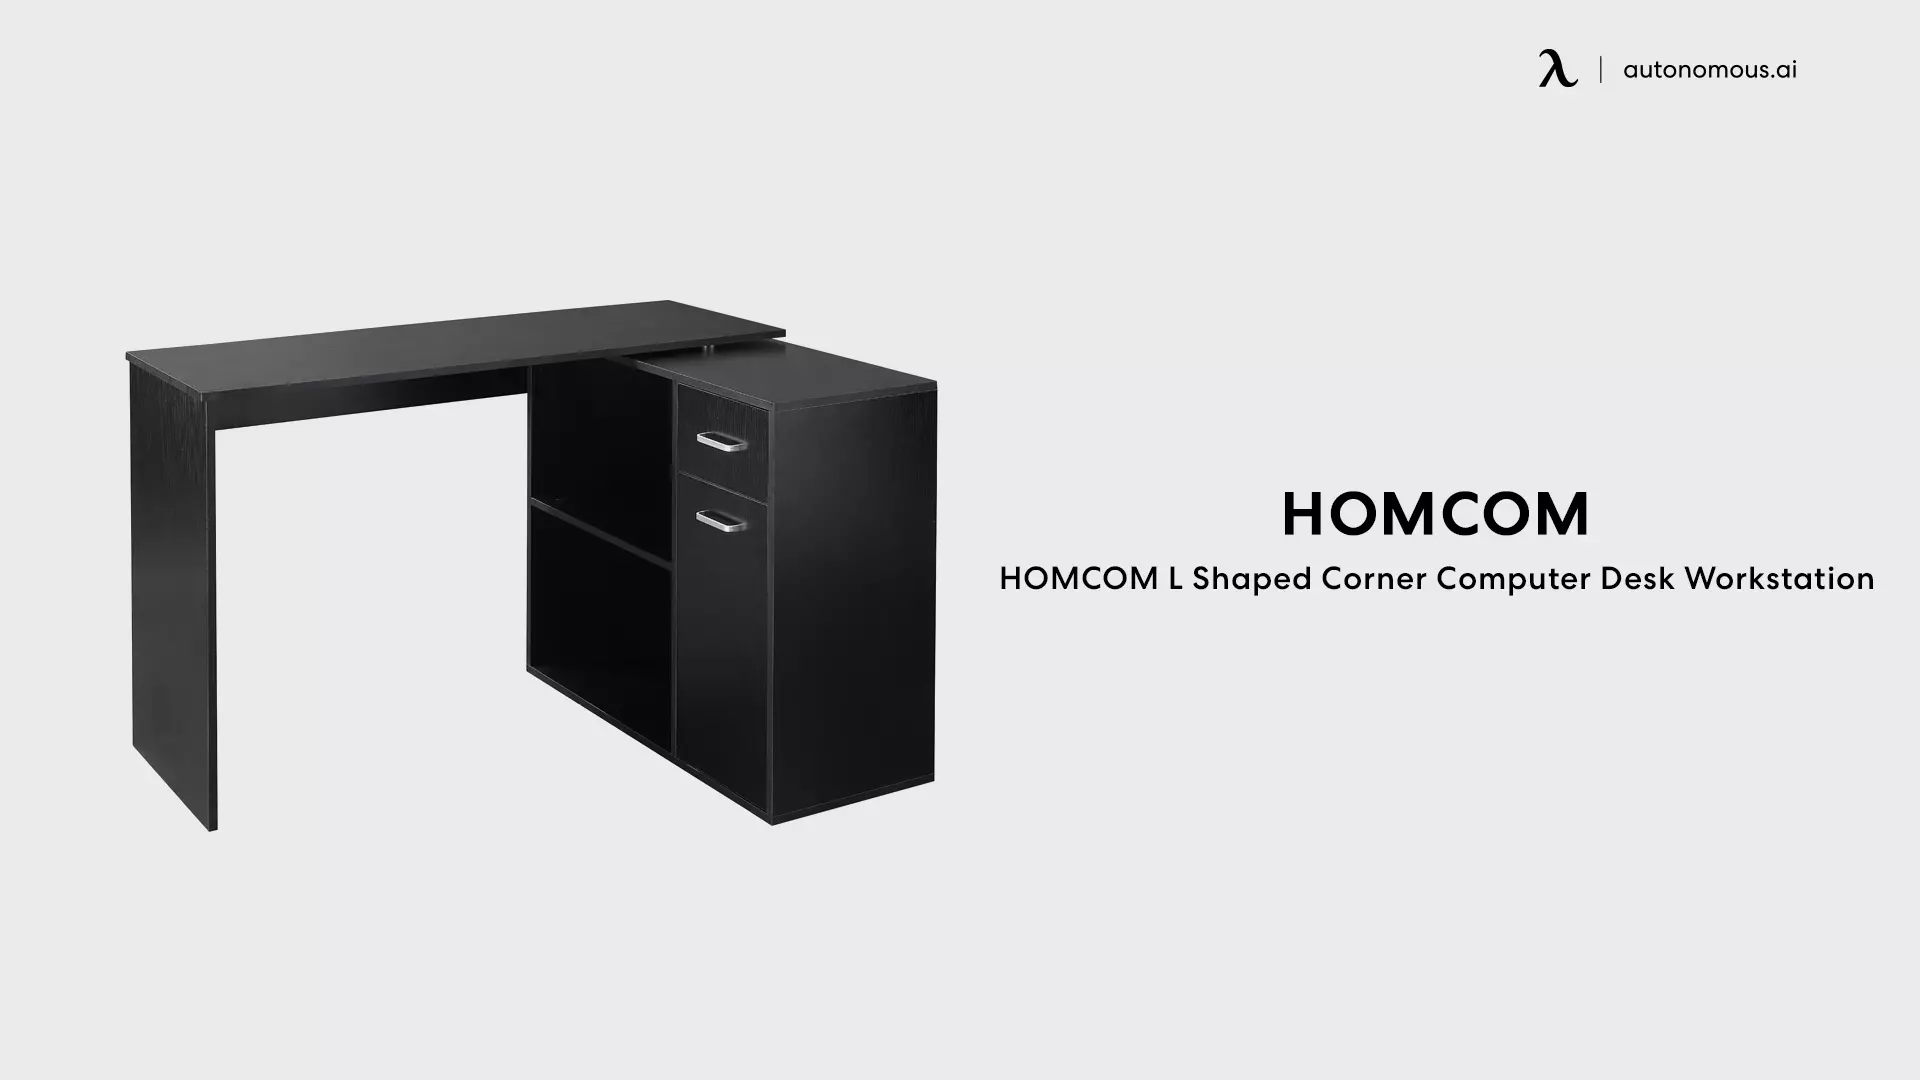 HOMCOM L Shaped Corner Computer Desk Workstation